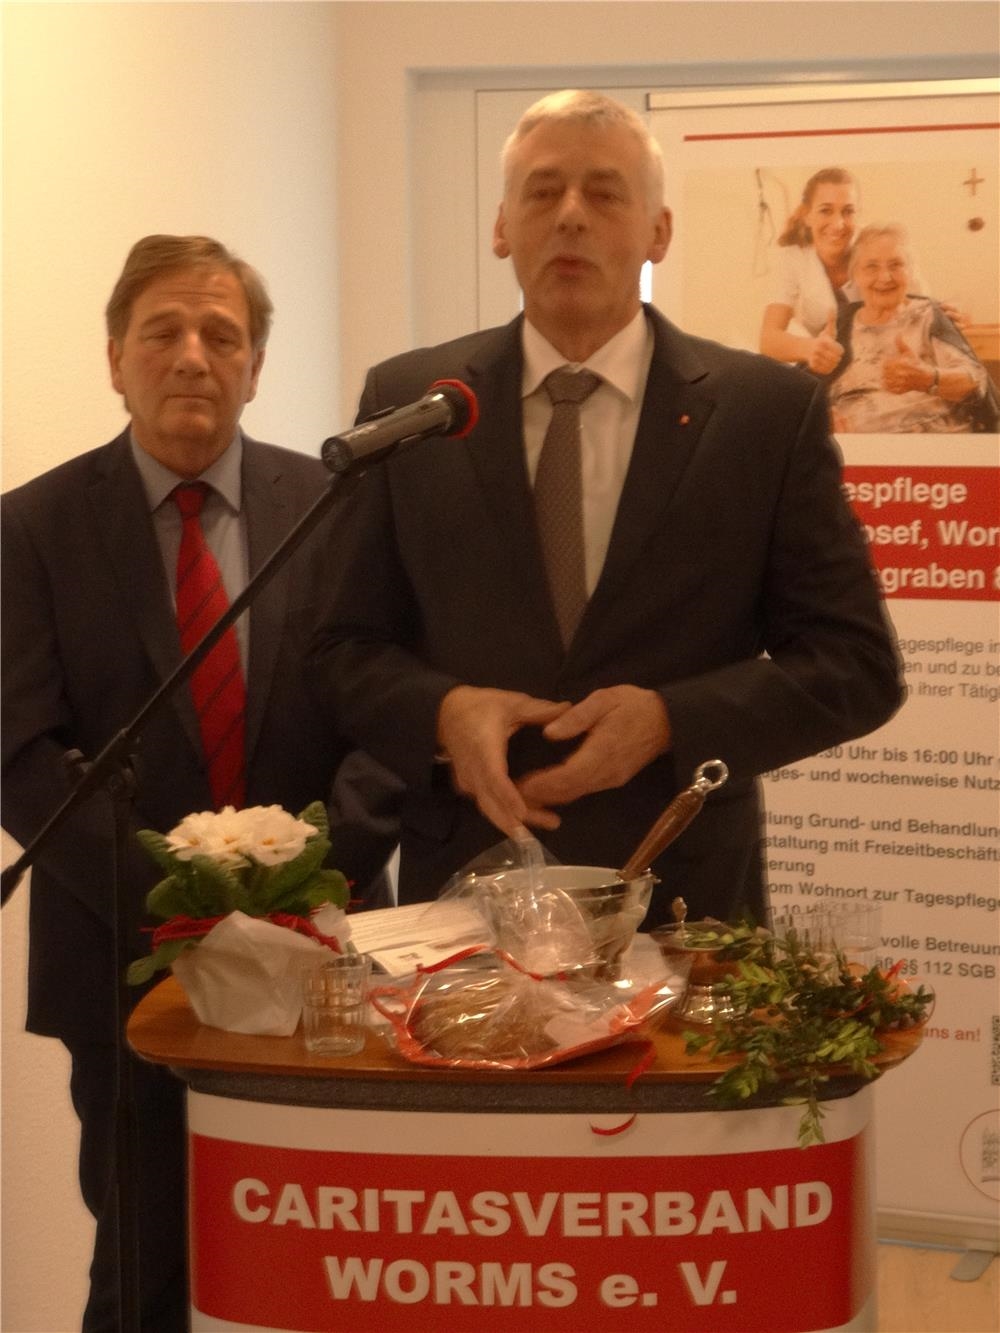 Volkmar Hommel und Georg Diederich bei der Begrüßung (Caritasverband Worms e. V.  - Ursula Perkoulidis)